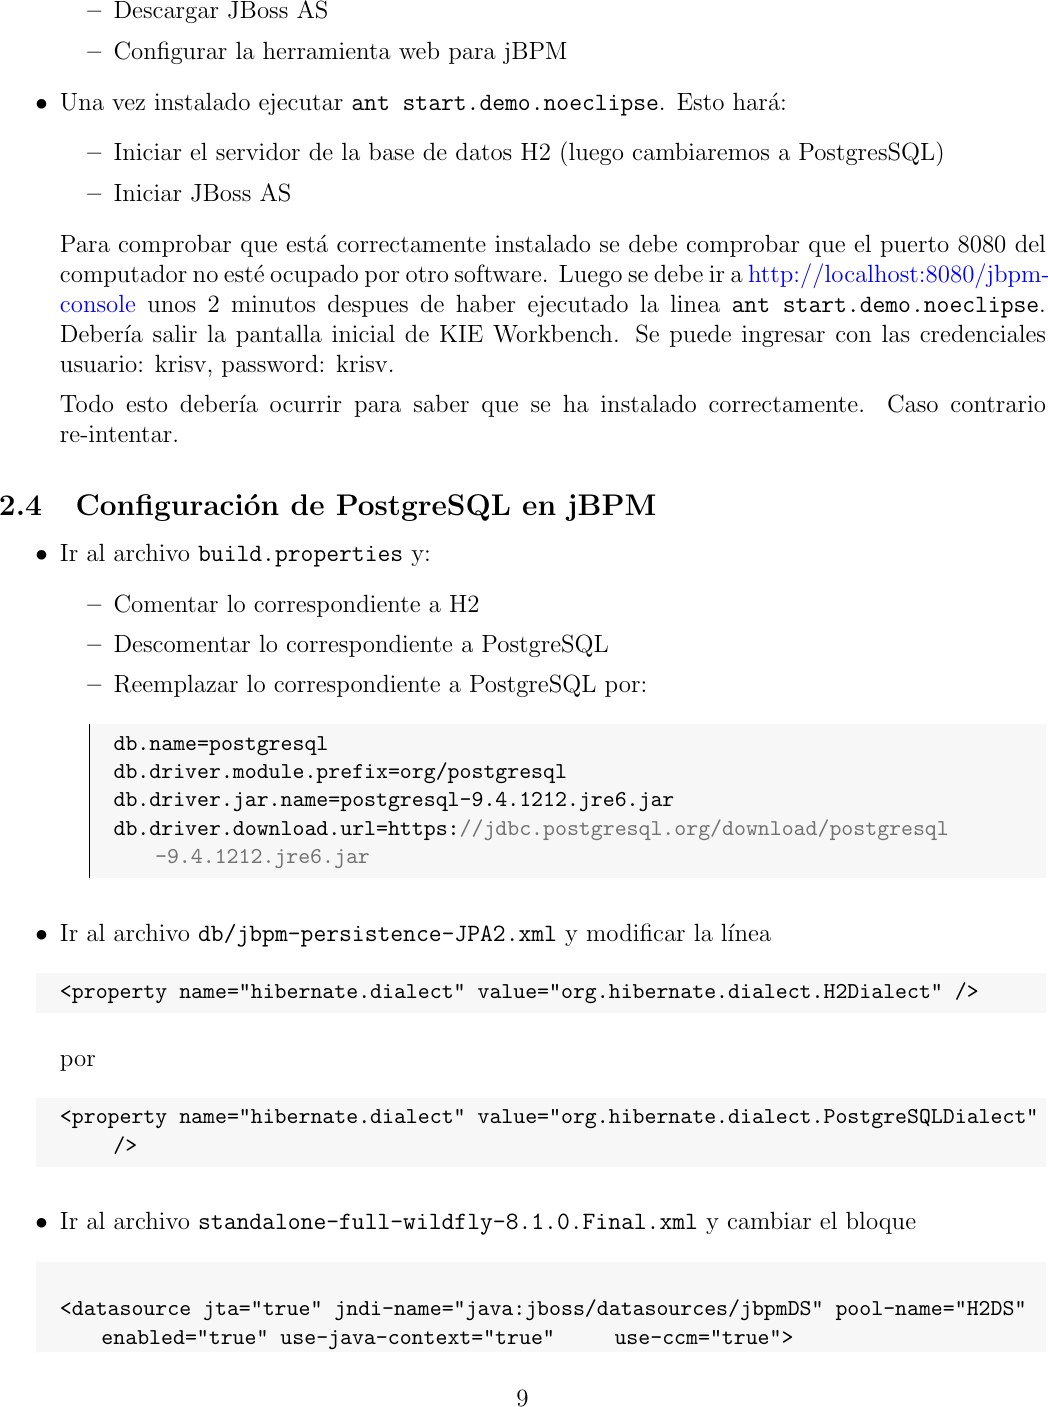 Page 9 of 11 - Manual De Configuracion